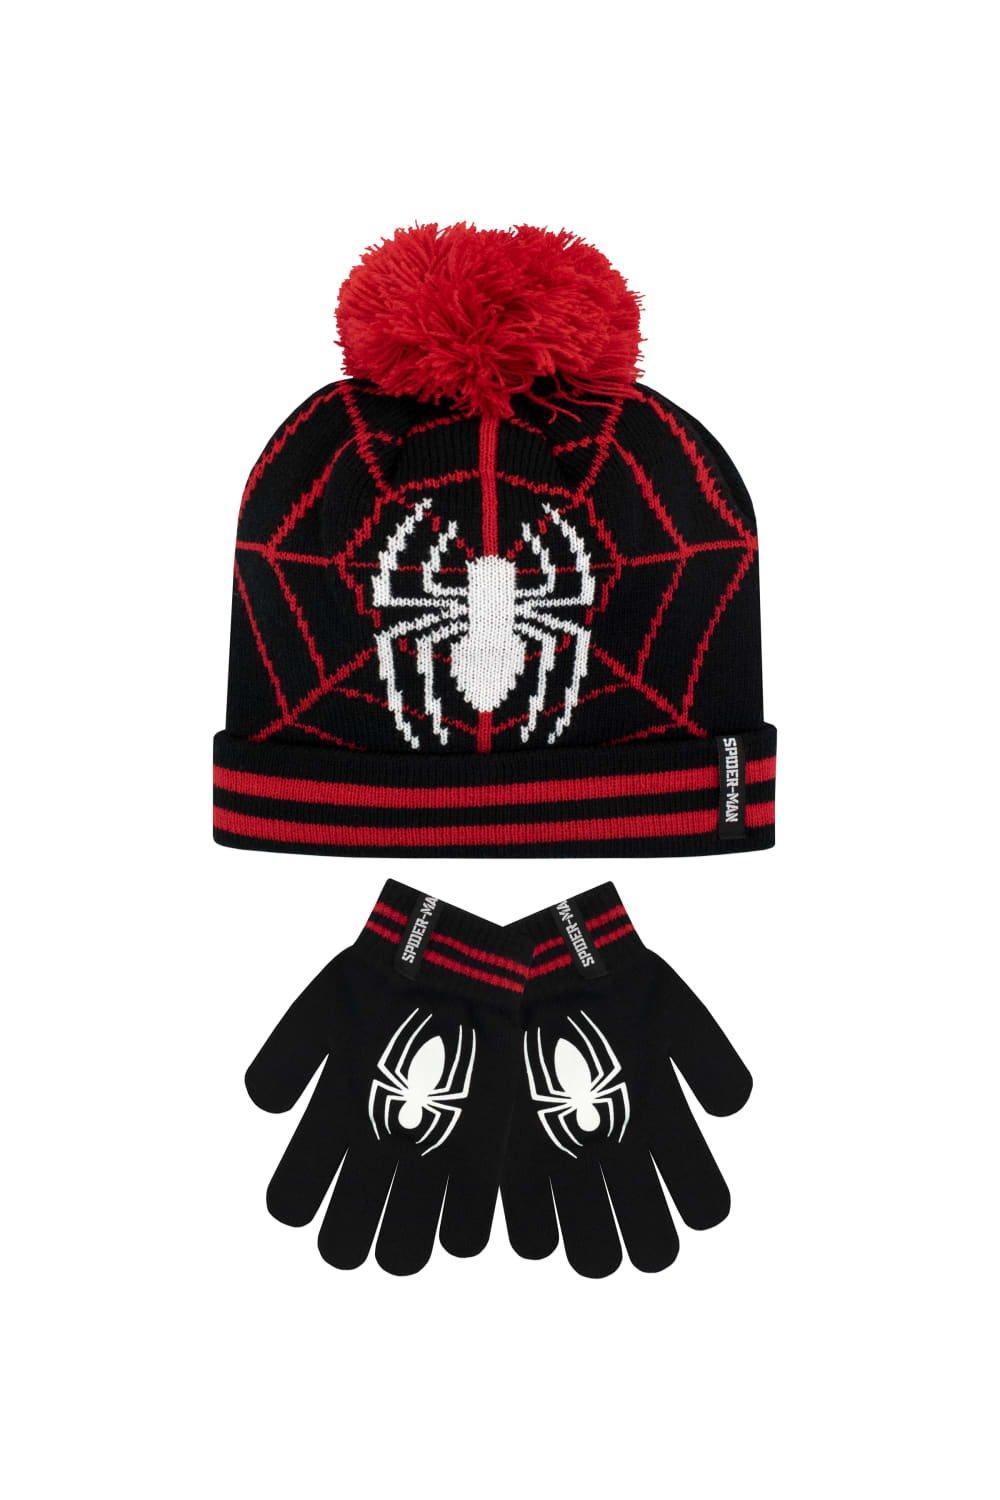 Детский комплект зимней шапки и перчаток «Человек-паук» Marvel, черный разноцветная плюшевая шапка унисекс для взрослых праздничная рождественская шапка шапка с помпоном для рождественской вечеринки